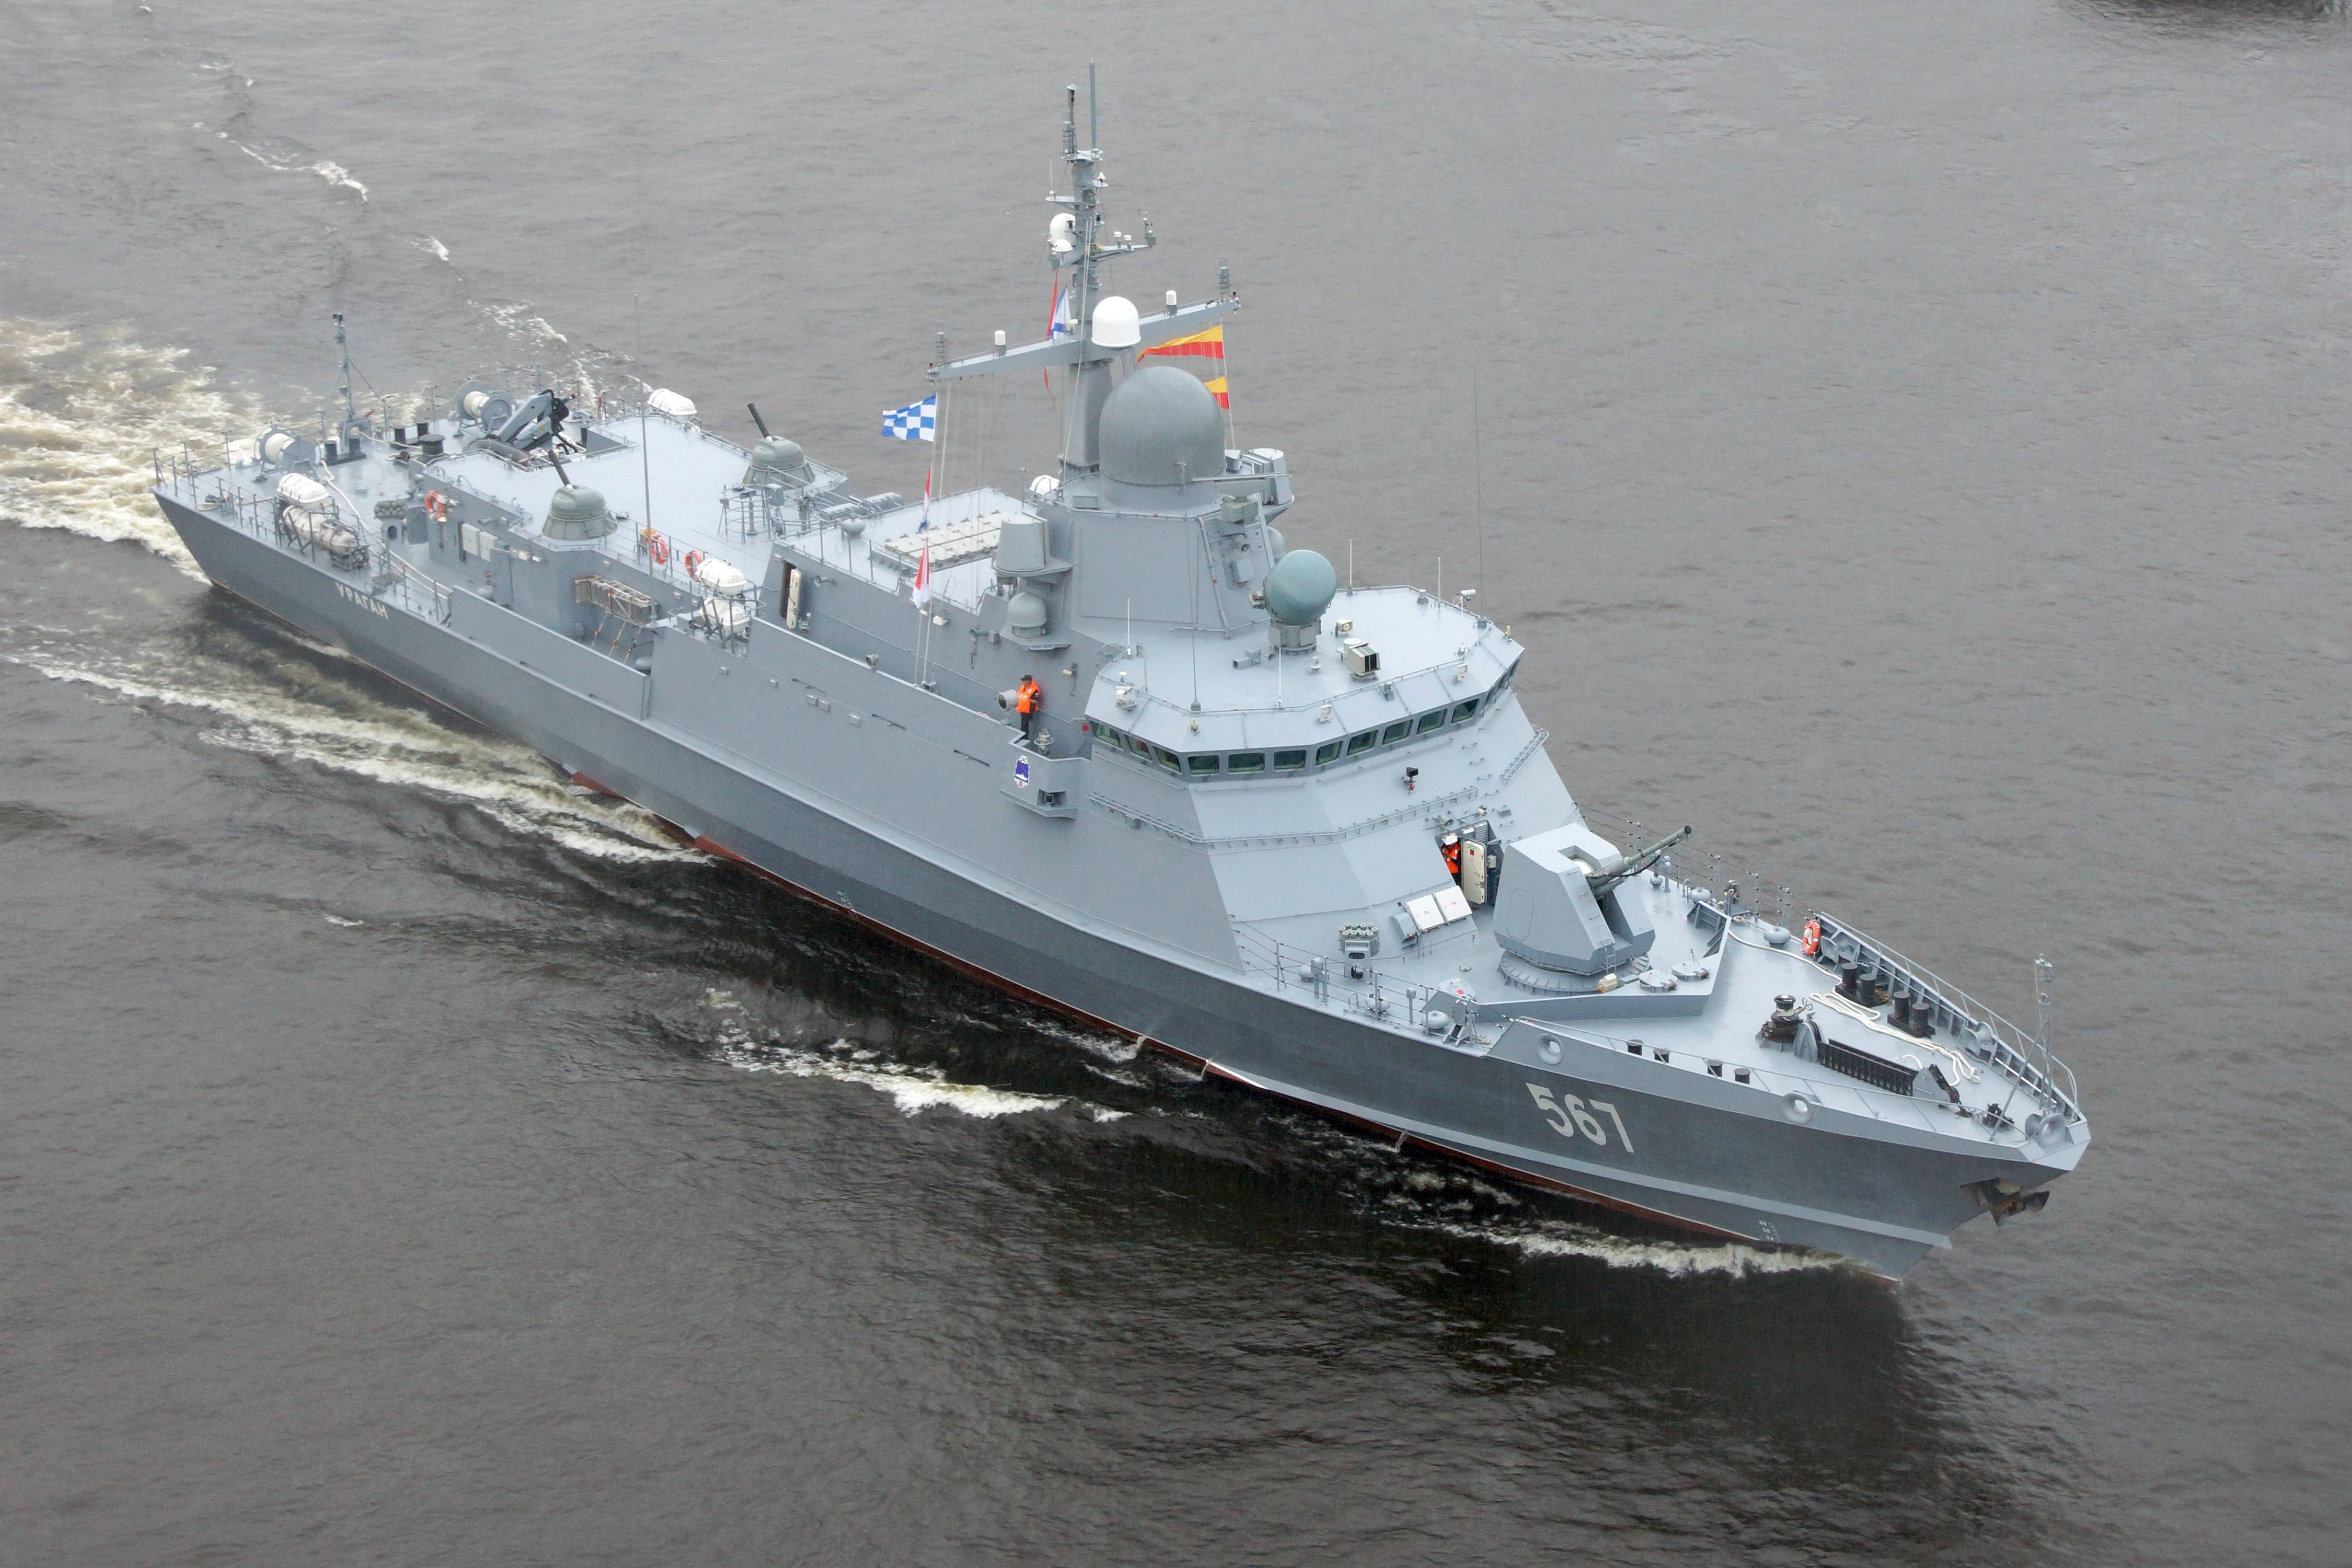 原创俄最新战舰下水,吨位不及056火力超052d,却存在致命缺陷